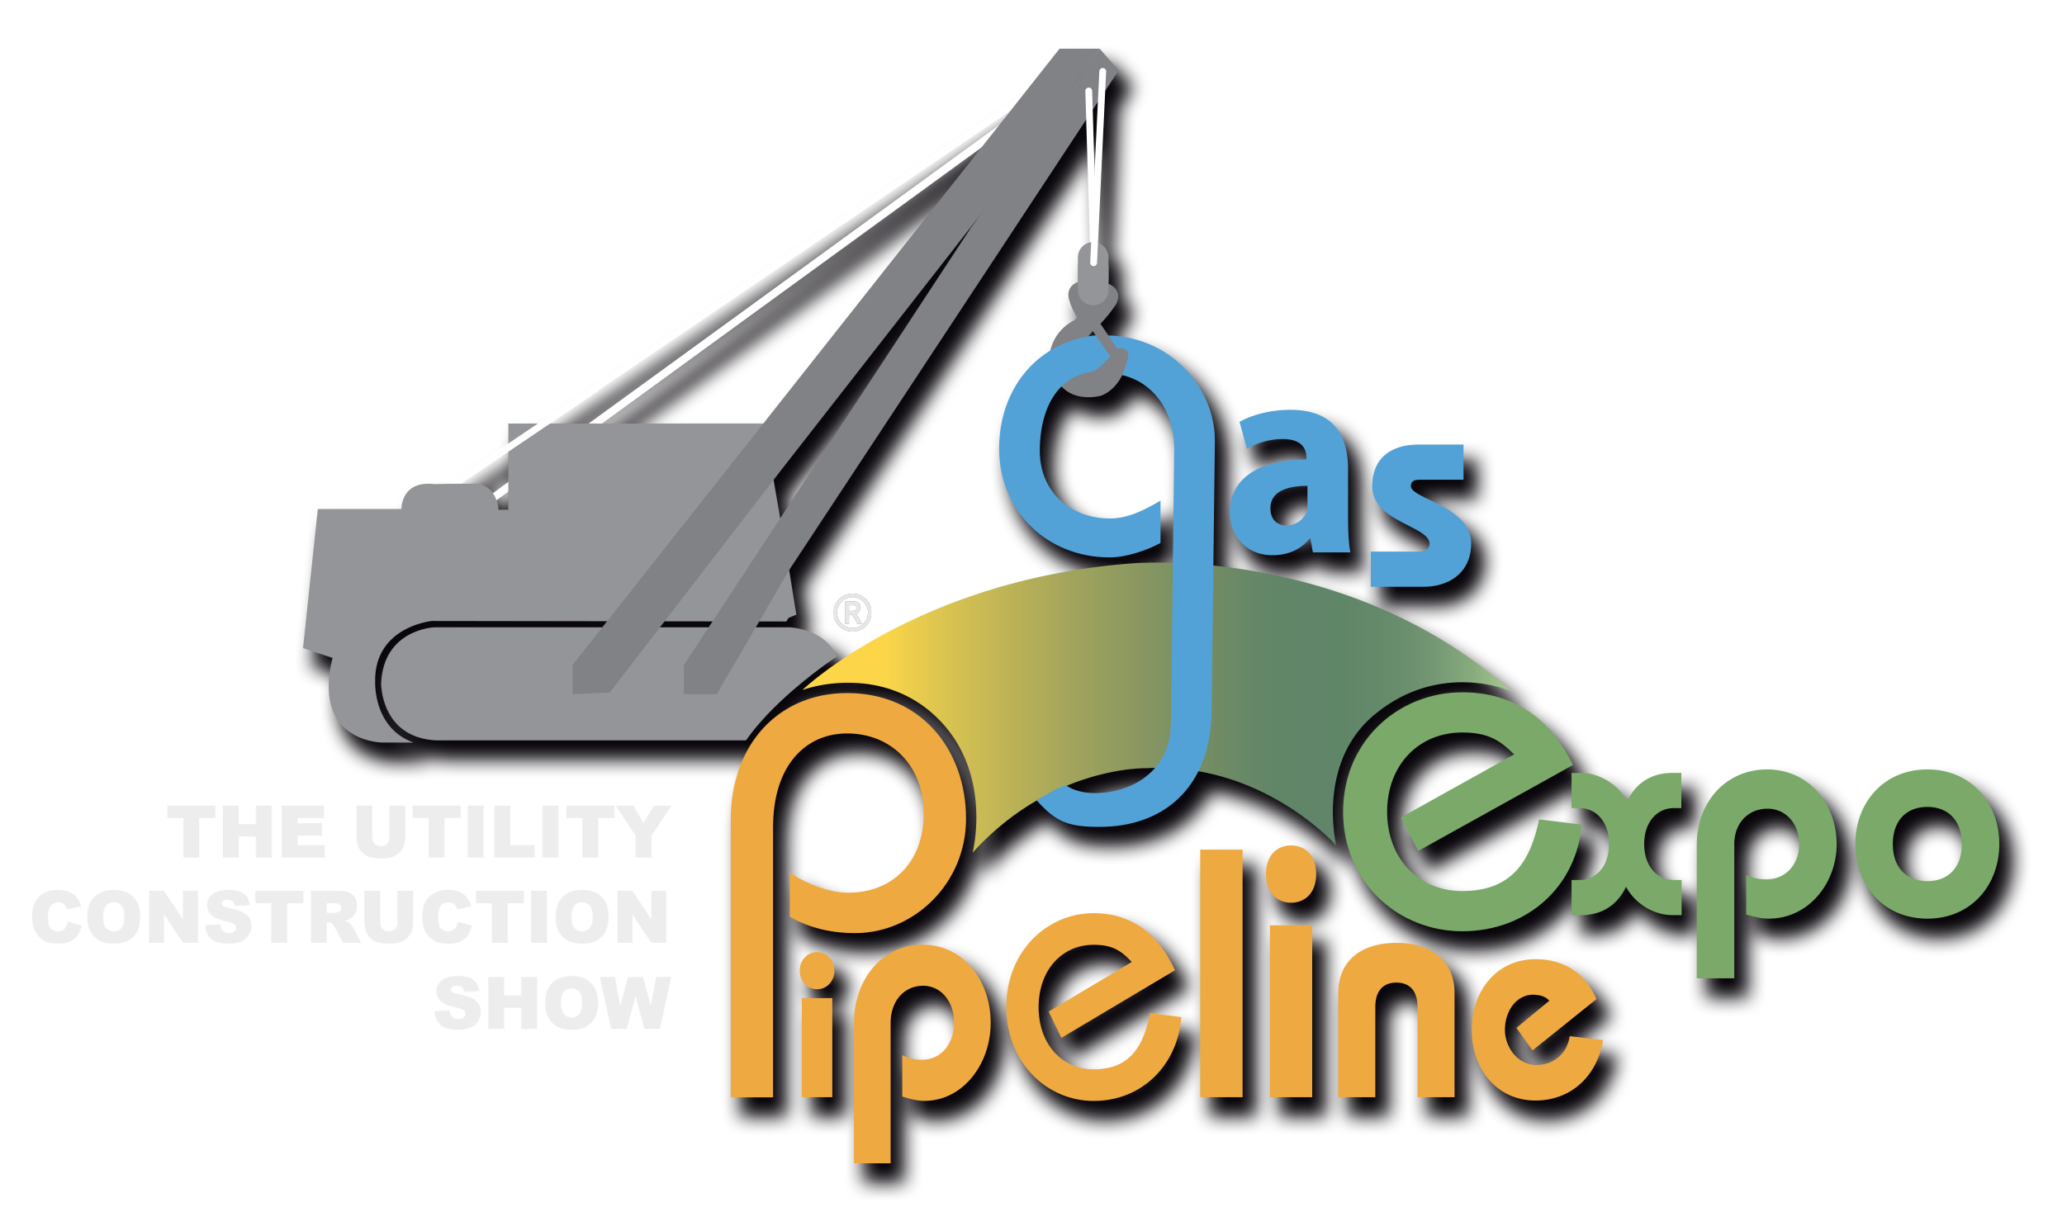 Home Pipeline Gasexpo